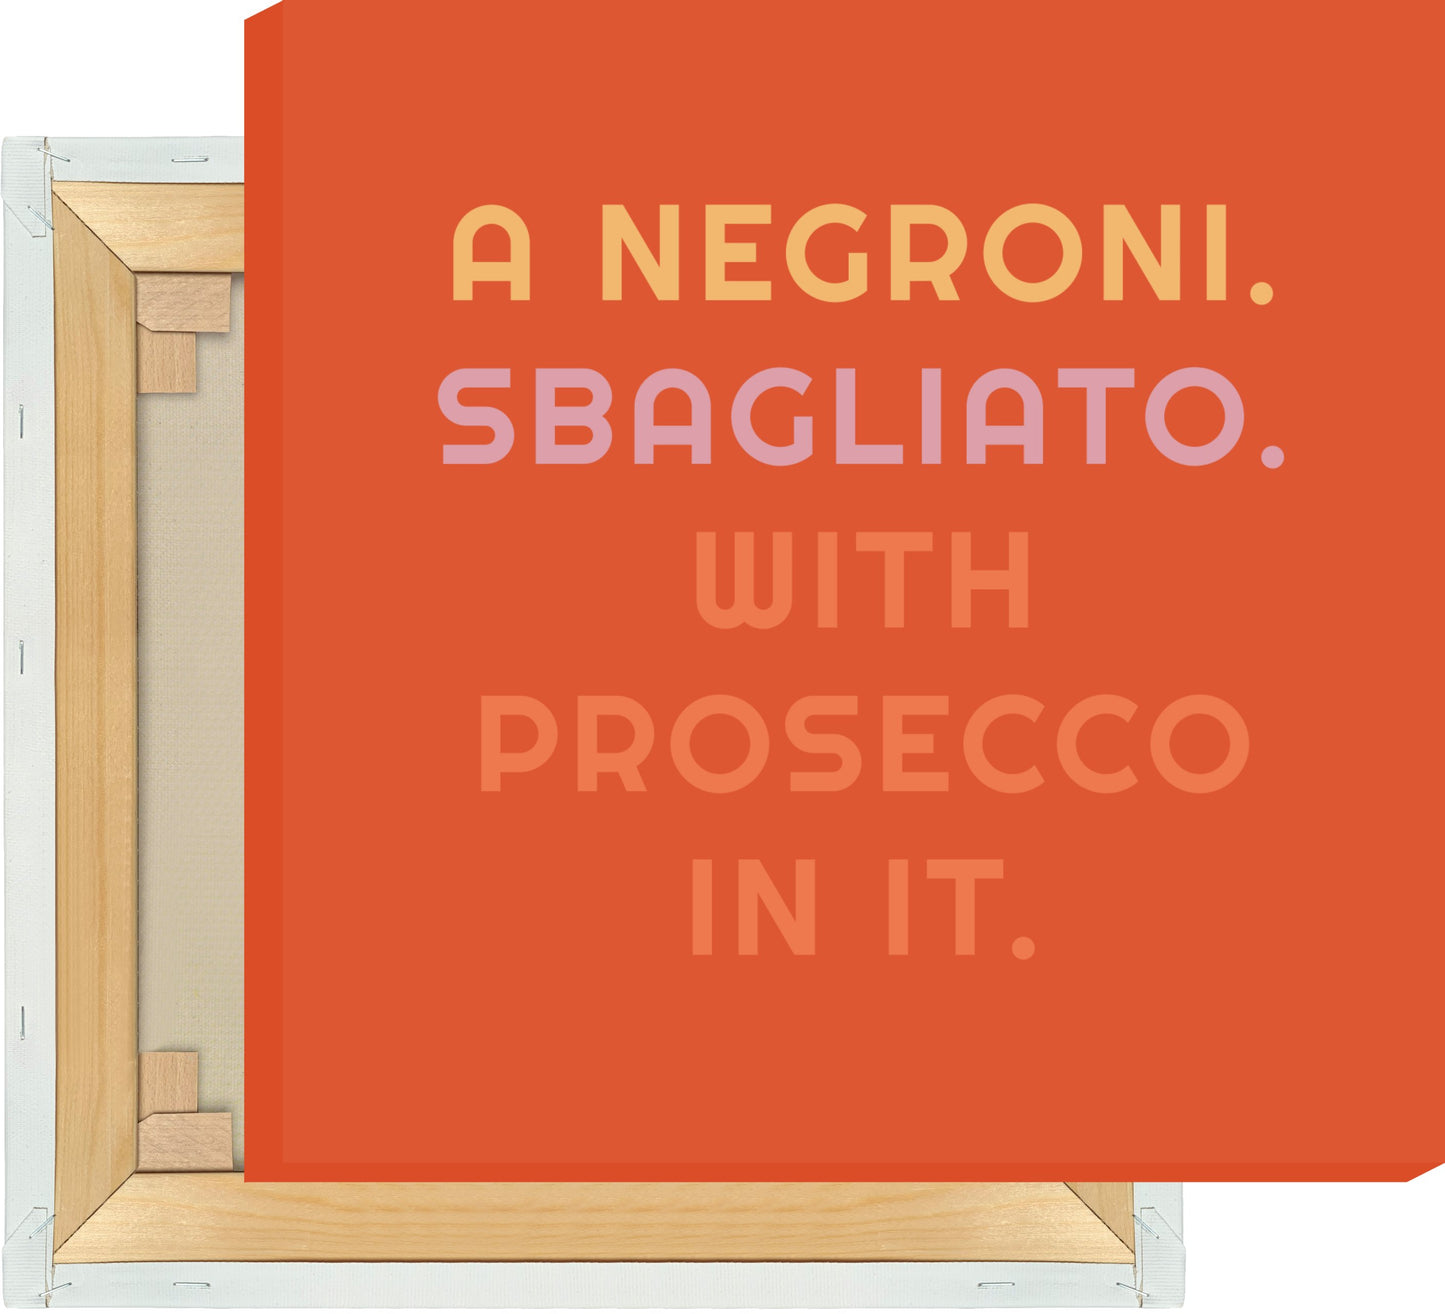 Leinwand A Negroni. Sbagliato. With Prosecco In It. - La Dolce Vita Collection